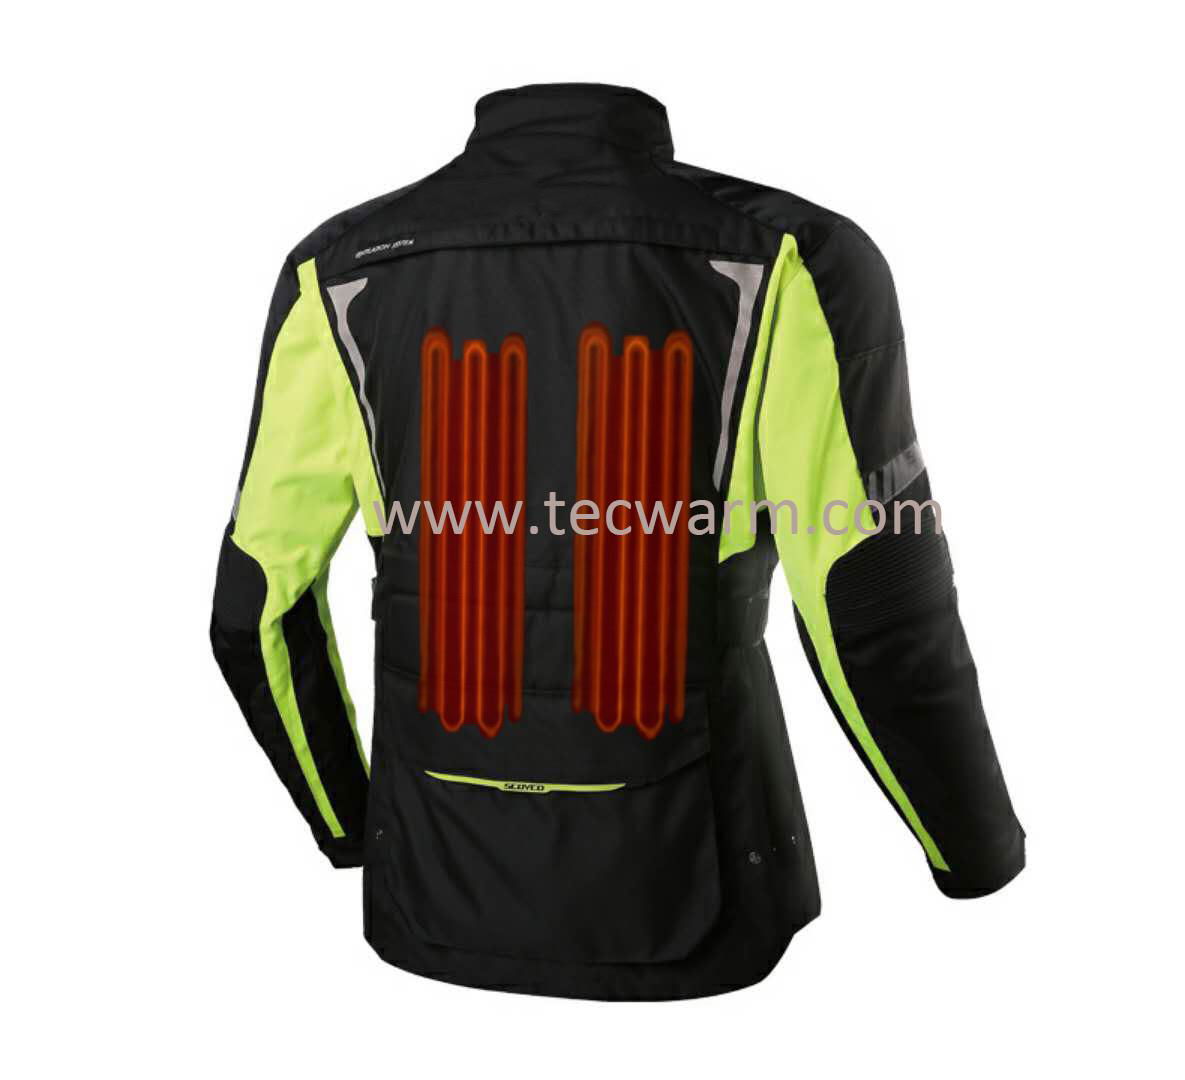 12V Heated Motorcycle Jacket 2